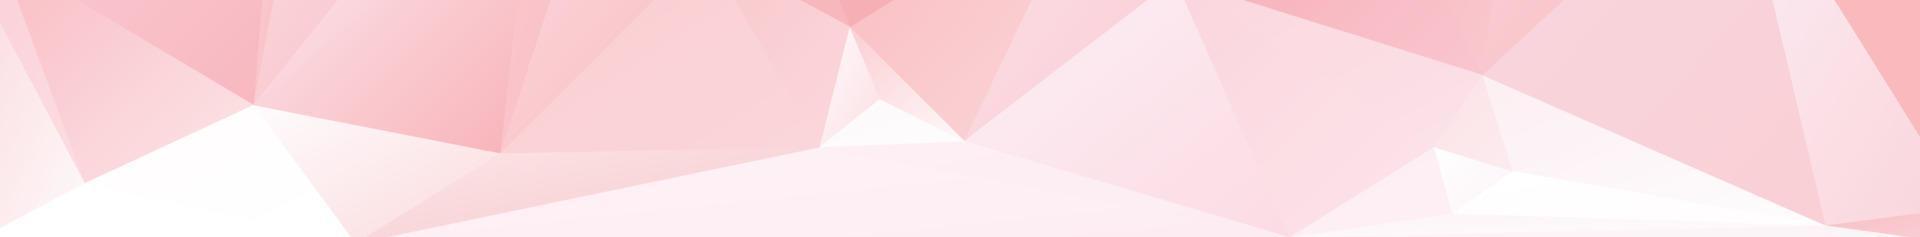 abstrato Rosa cor polígono fundo projeto, abstrato geométrico origami estilo com gradiente. apresentação, site, pano de fundo, capa, banner, padrão modelo vetor